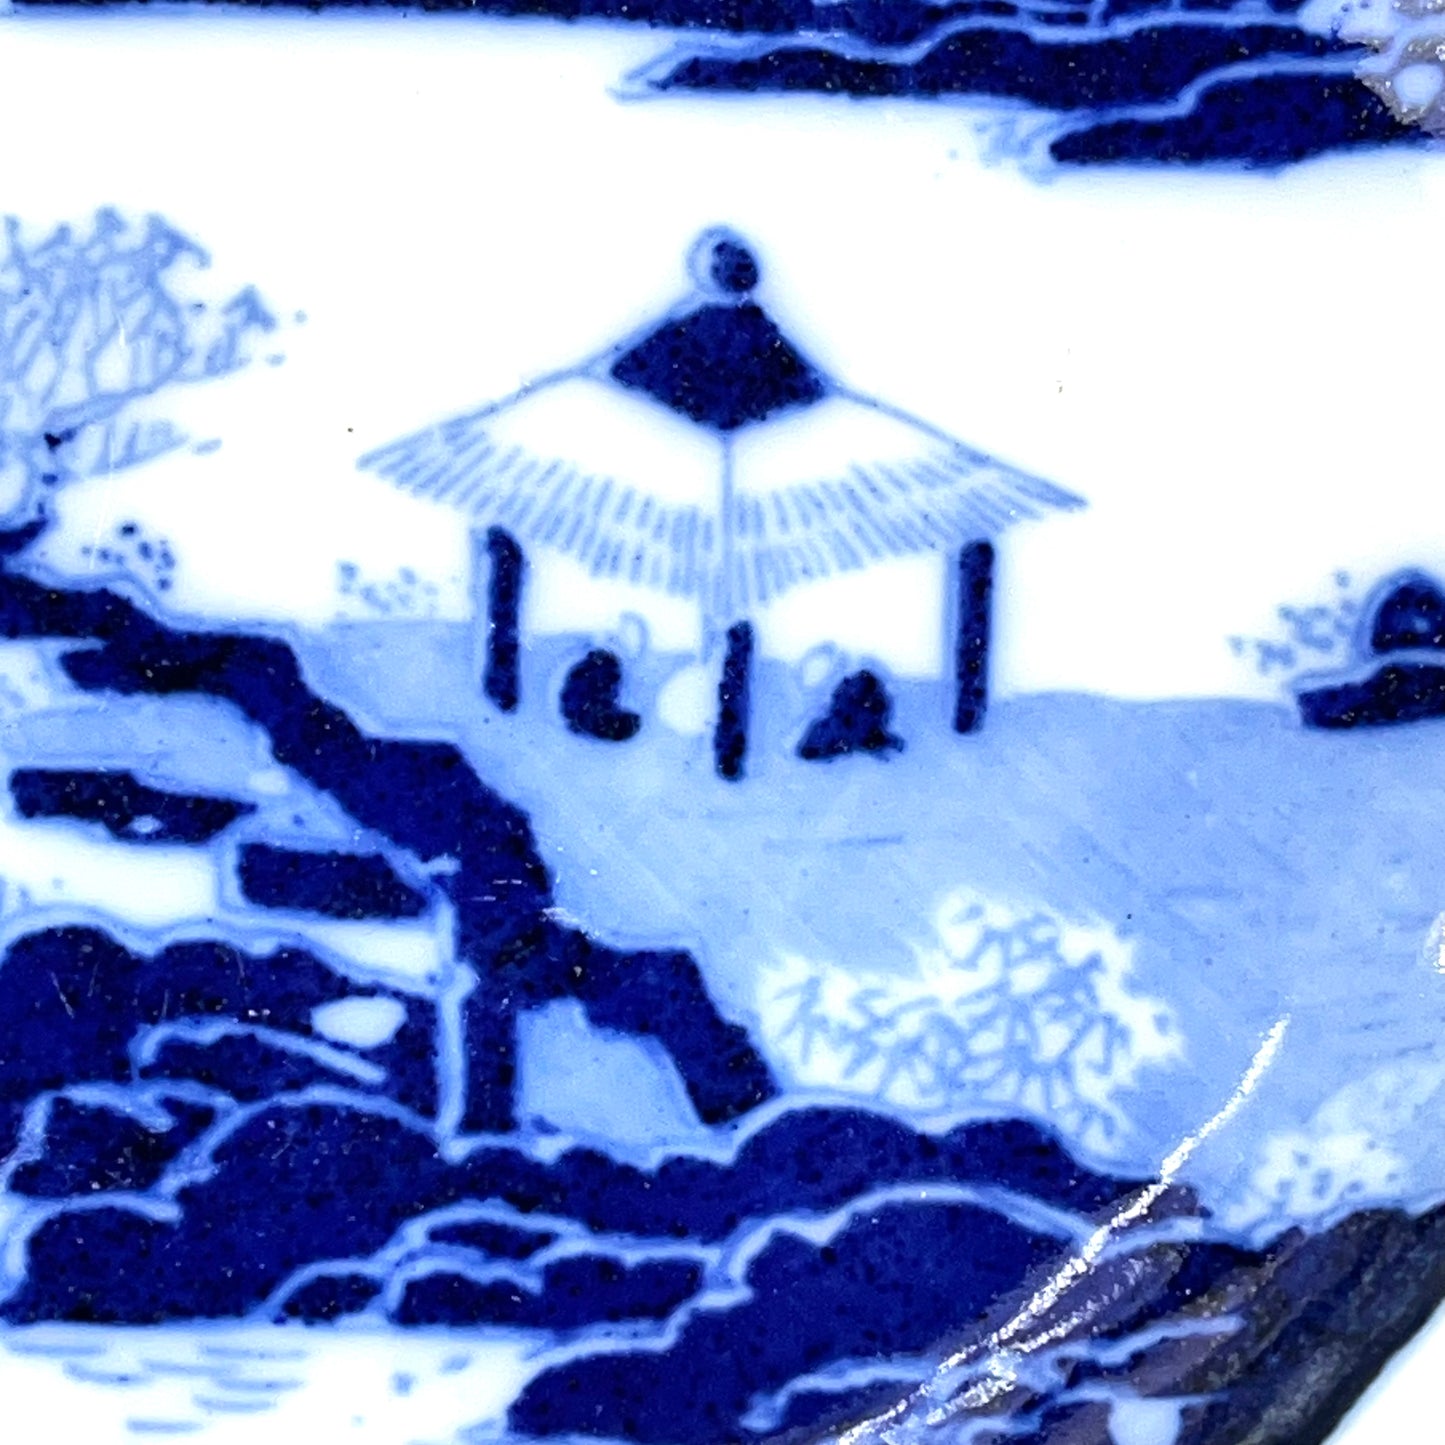 Antique c.1900 Meiji Era Japanese Ceramic Imari Plate Cranes w/ Landscape 6"